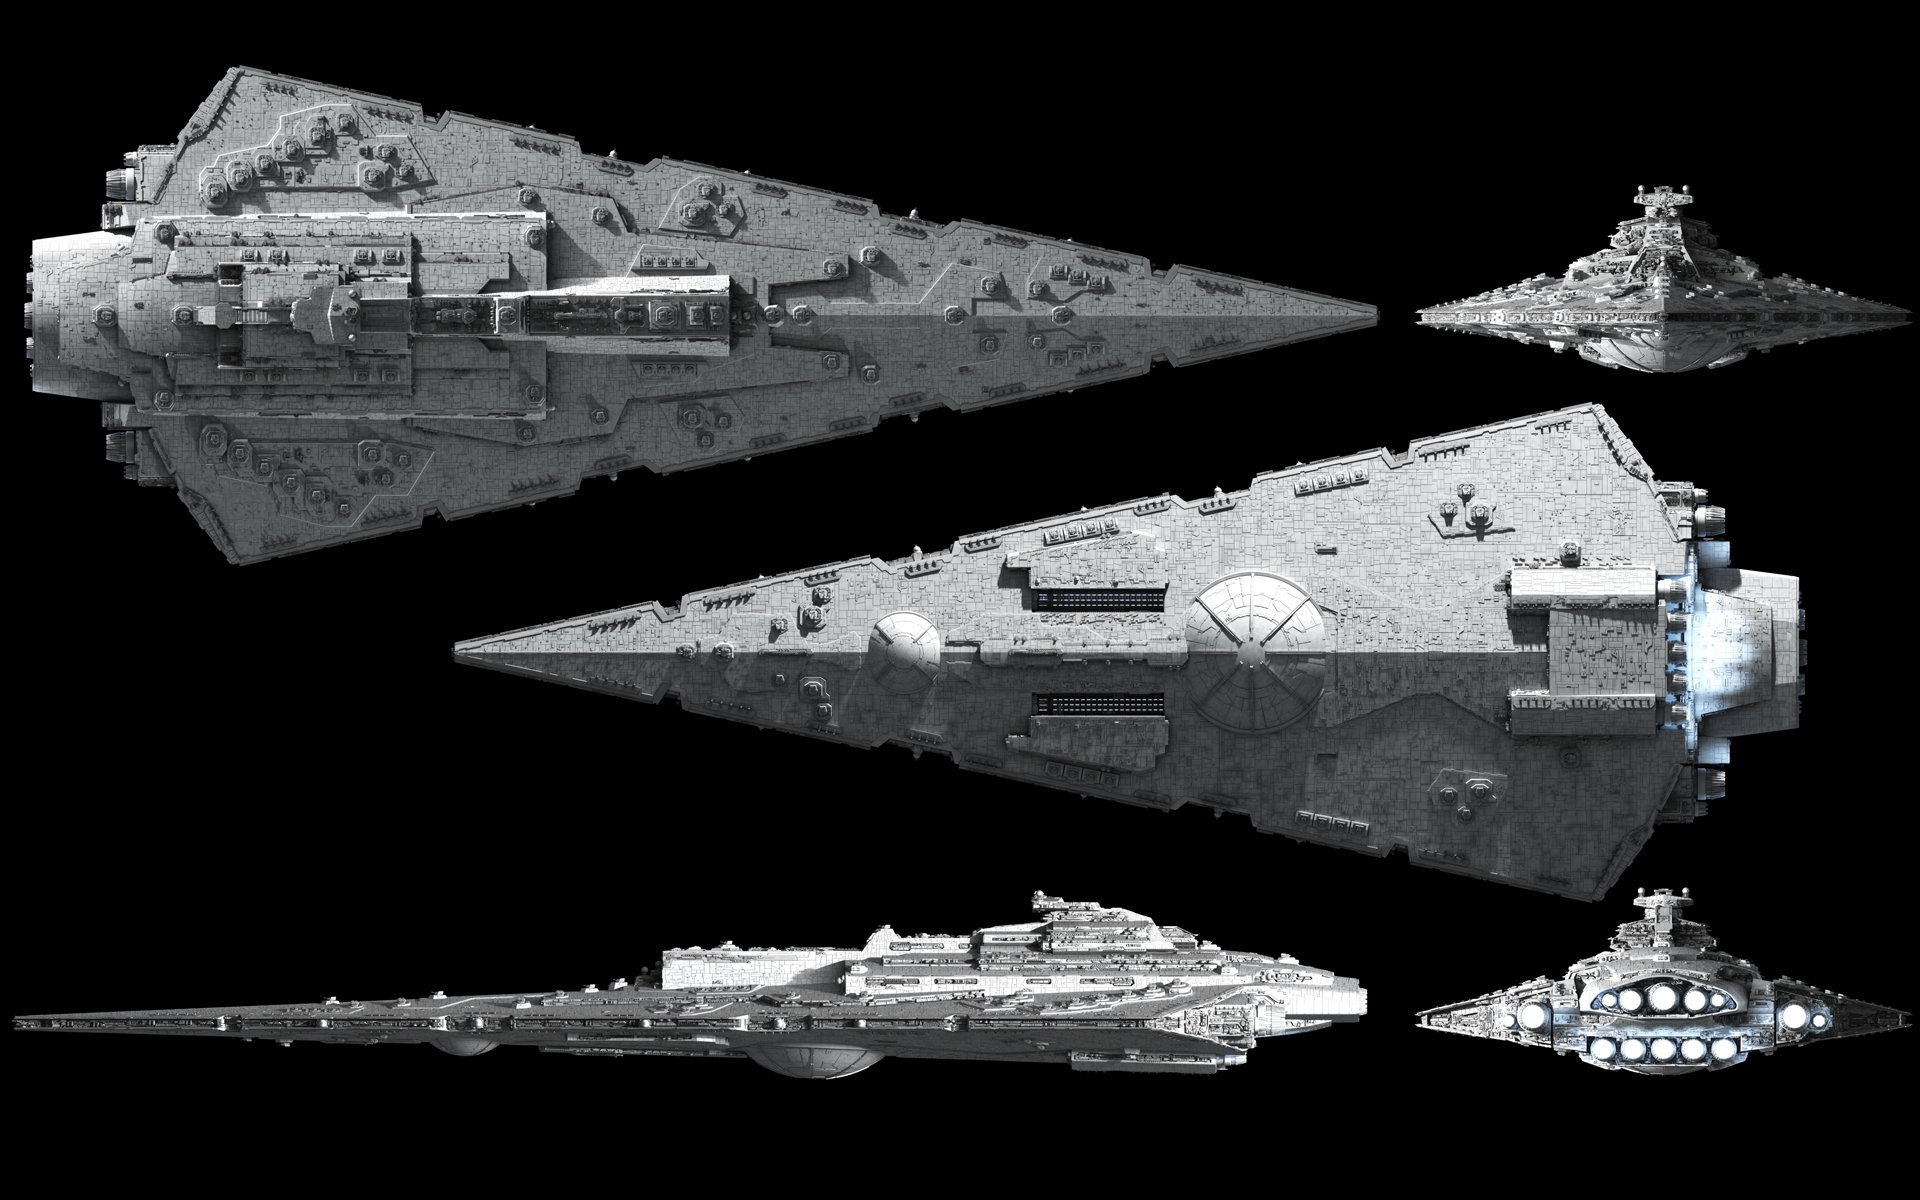 star wars ships wallpaper,battlecruiser,vehicle,battleship,rocket powered aircraft,spacecraft